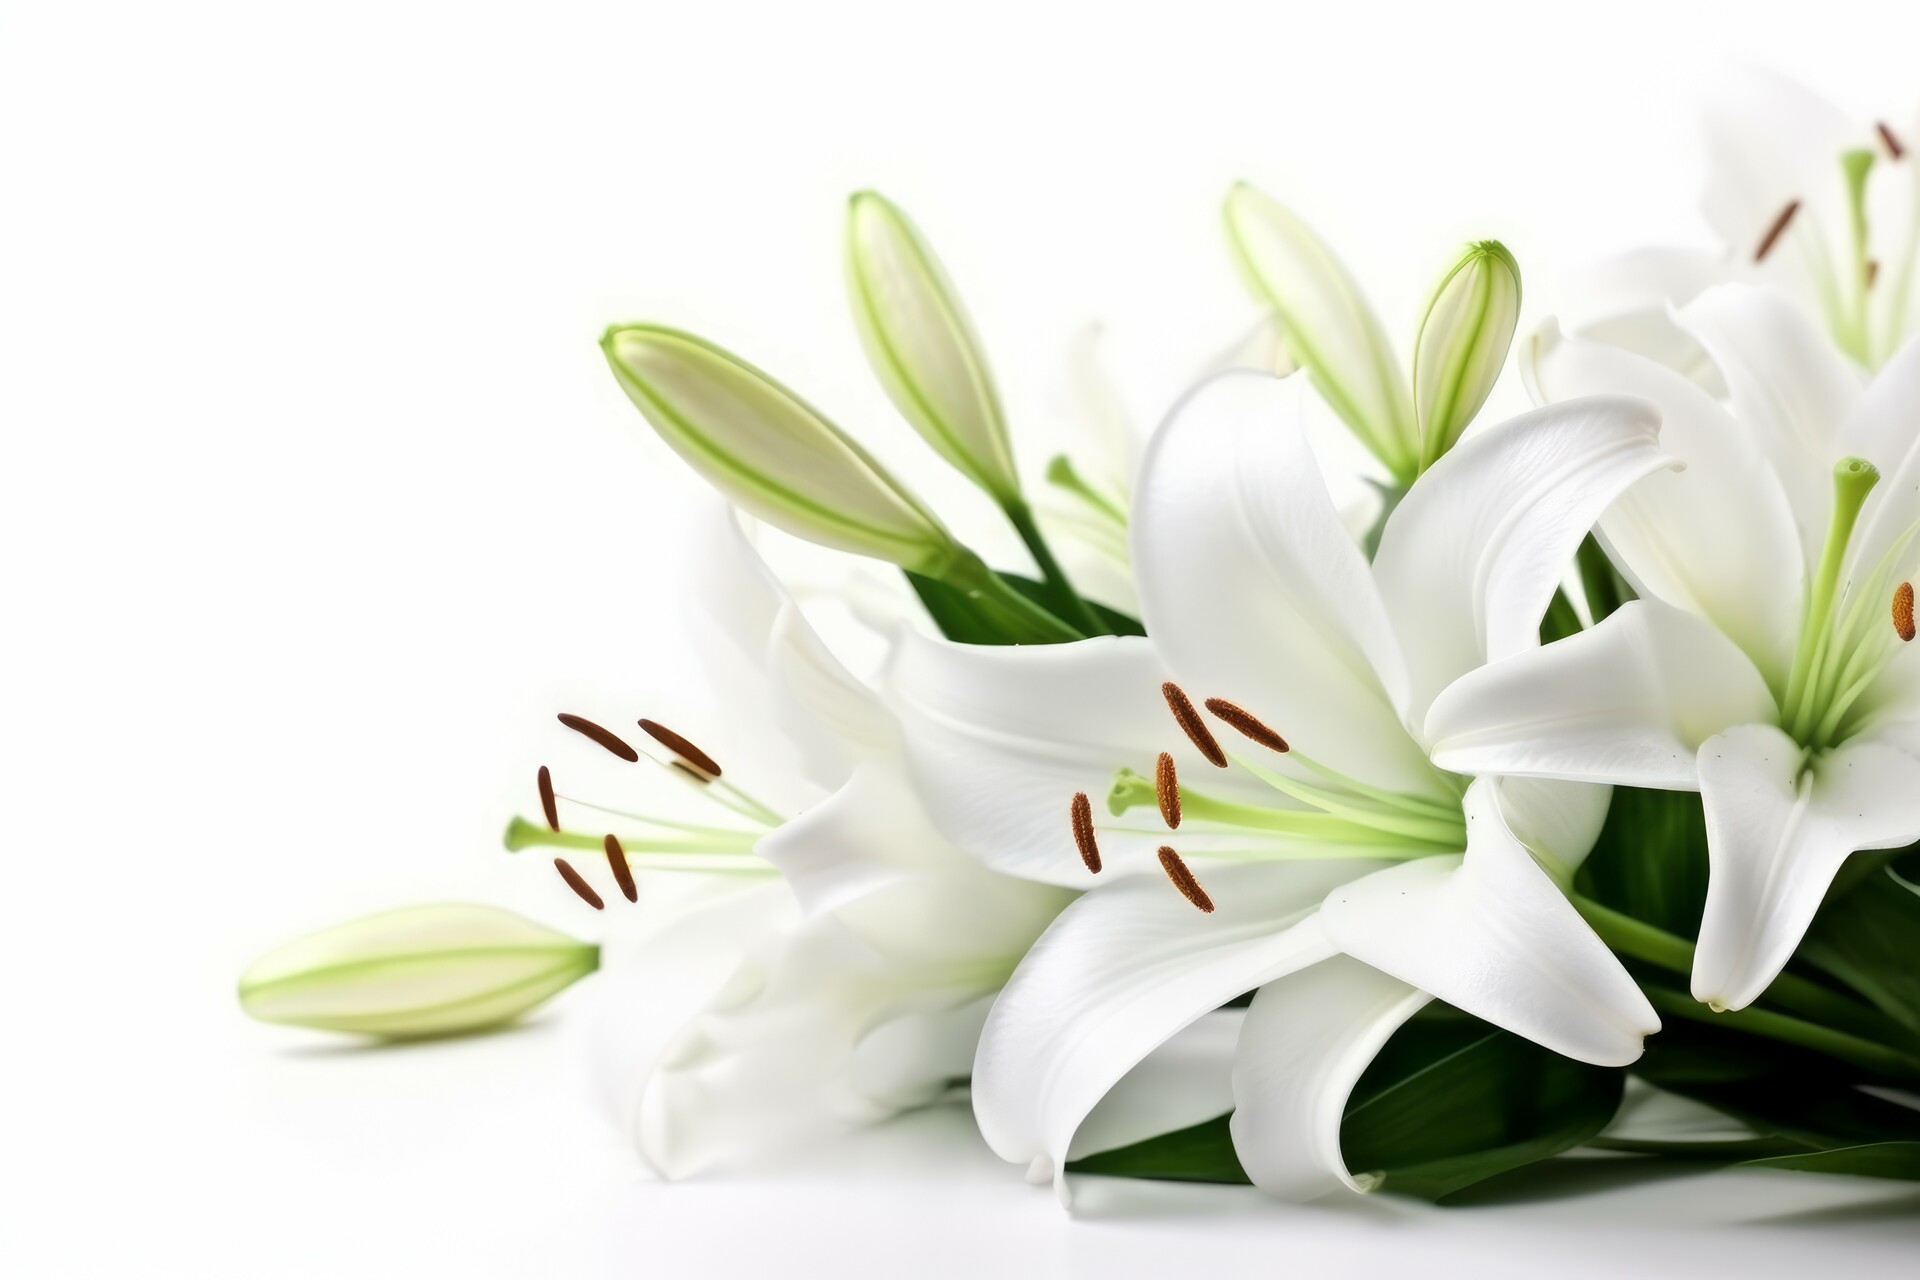 Na tym ujmującym obrazku możemy podziwiać piękno białych lilii, które wznoszą się dumnie ponad zielenią. Ich delikatne płatki, o czystym białym kolorze, emanują elegancją i harmonią. Kwiaty te symbolizują niewinność, czystość i delikatność, tworząc atmosferę spokoju i piękna